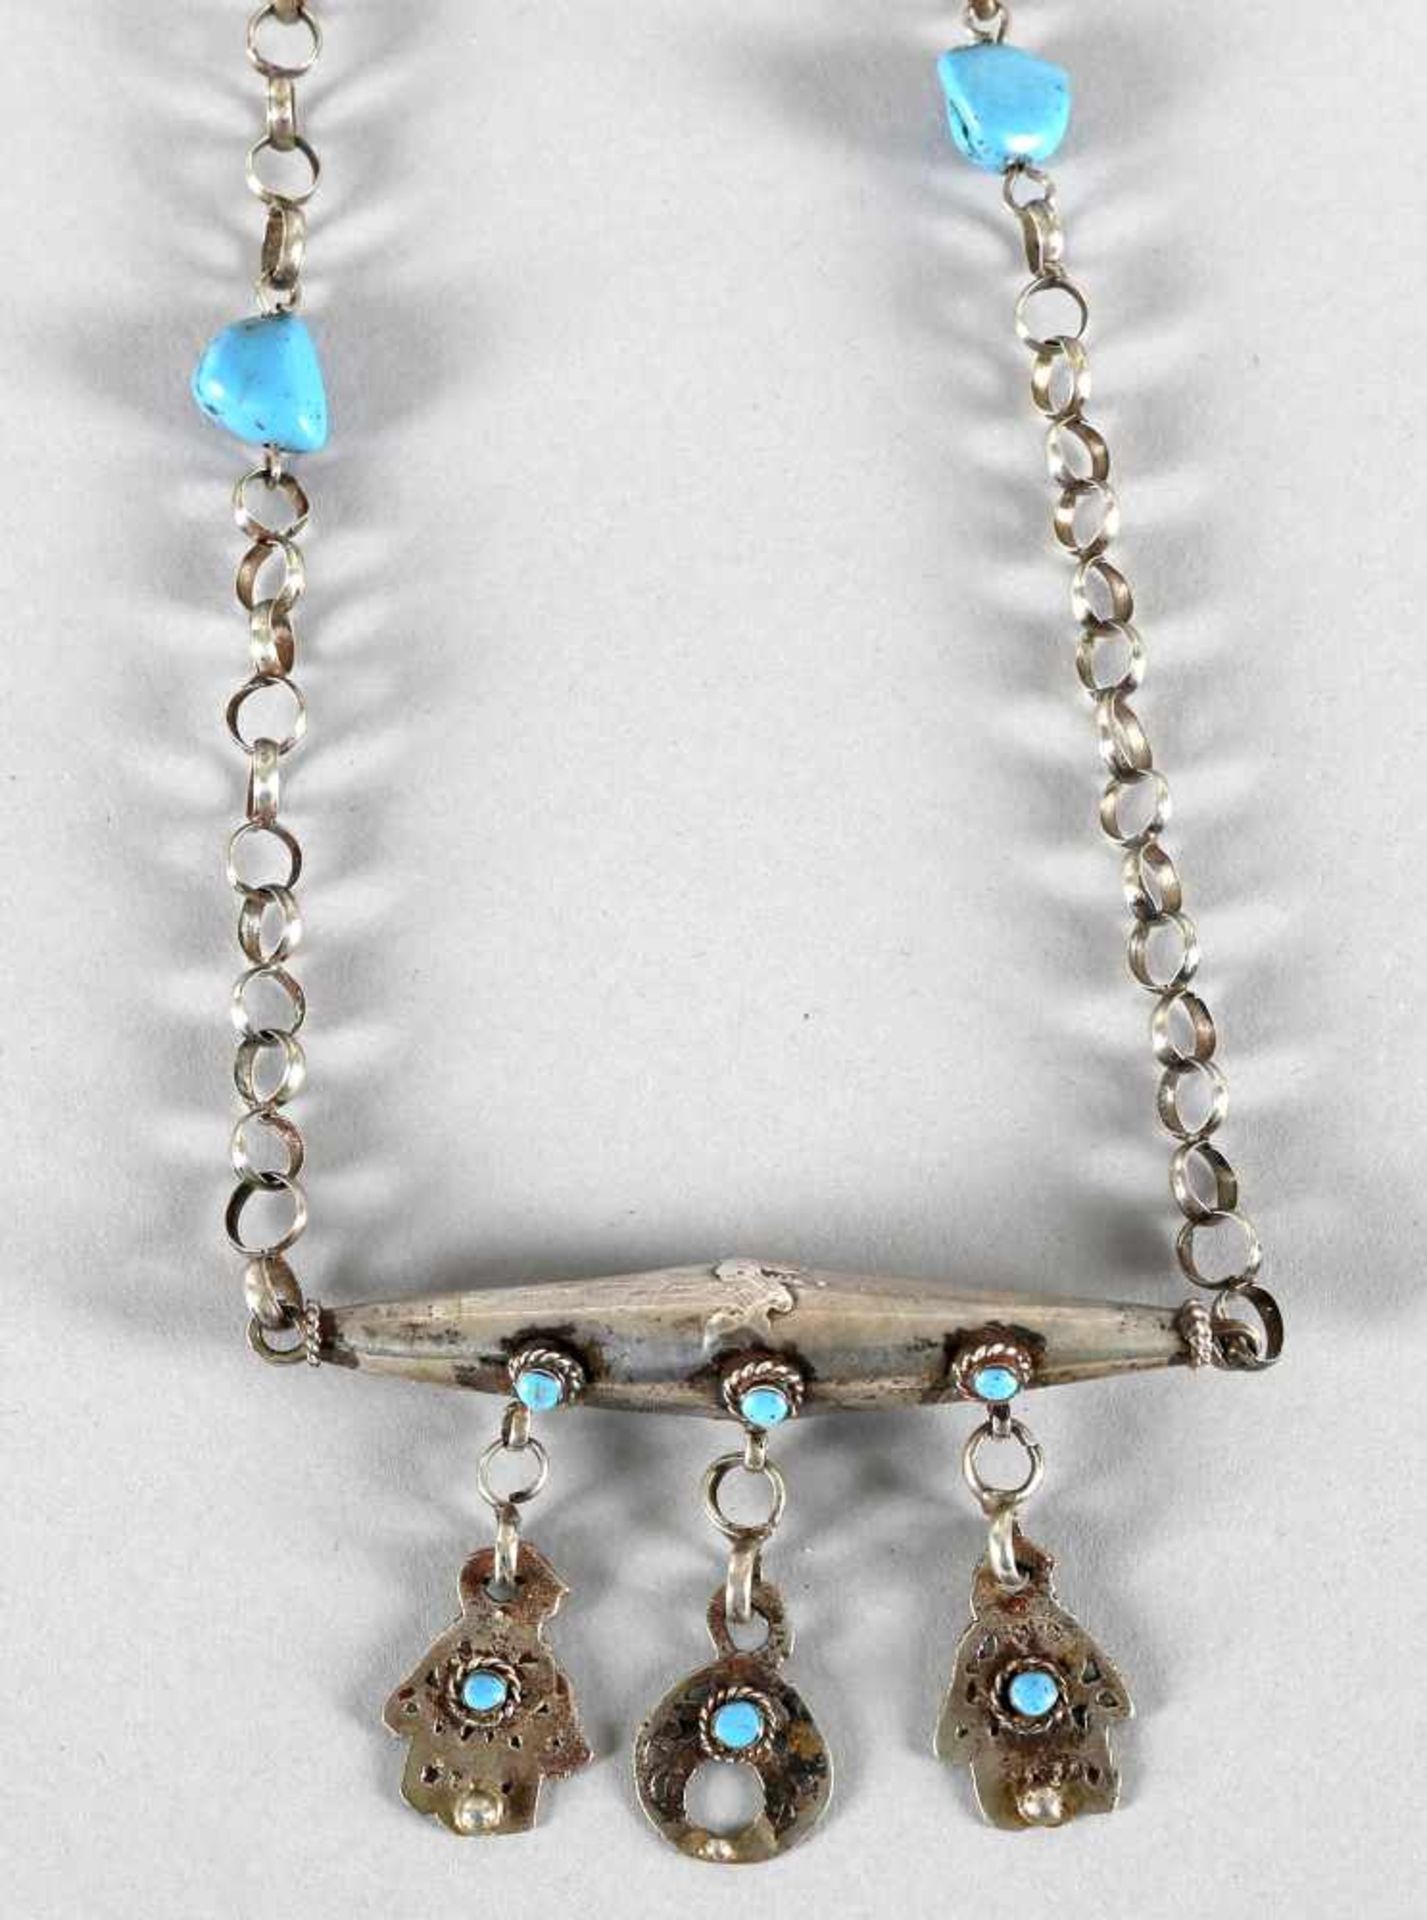 Schöne Halskette mit AmulettbehälterSilber besetzt mit Türkis, Behälter mit Anhänger und Hand der